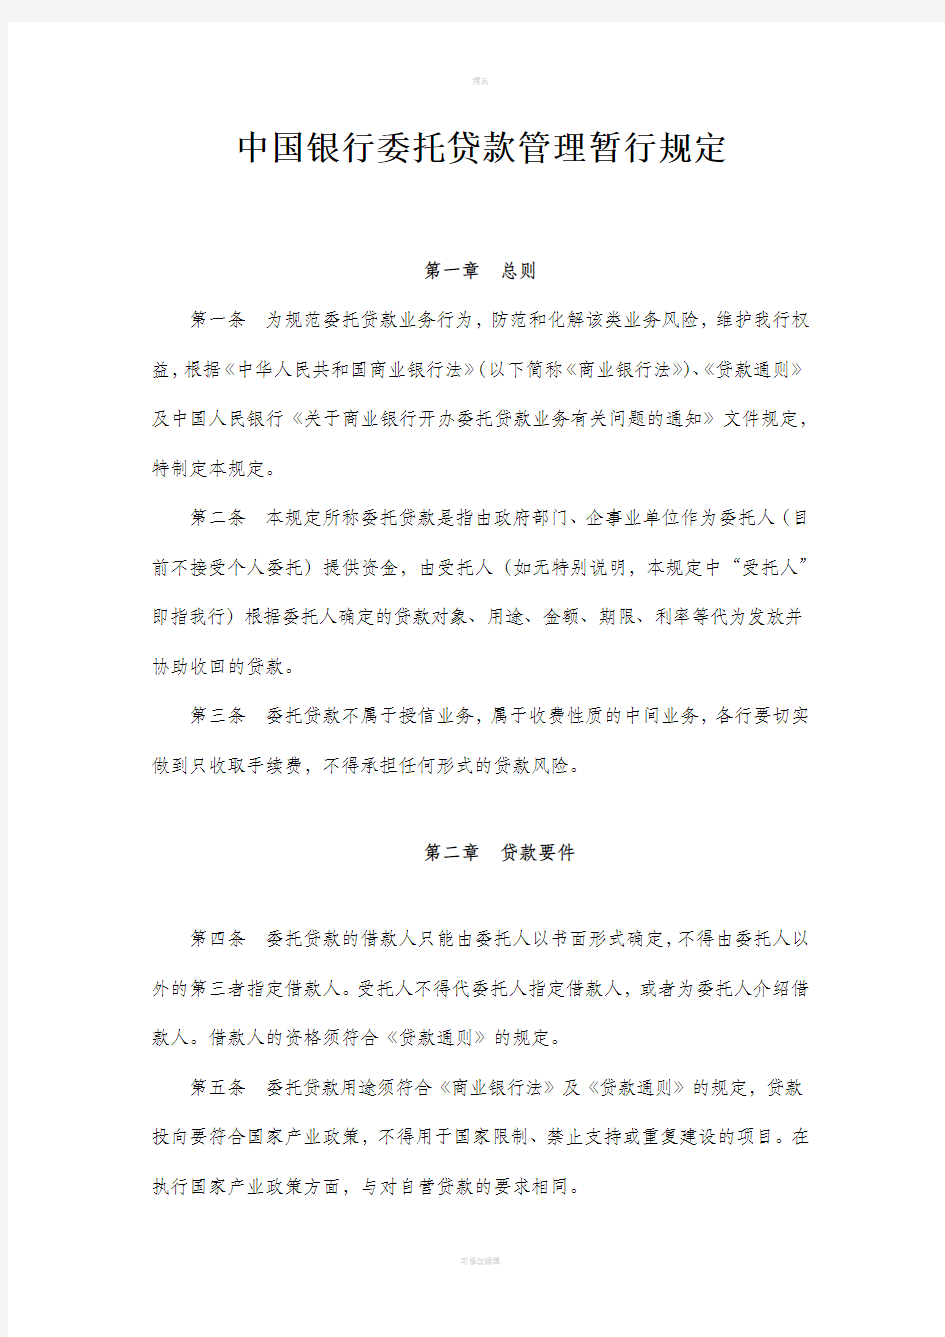 中国银行委托贷款管理暂行规定